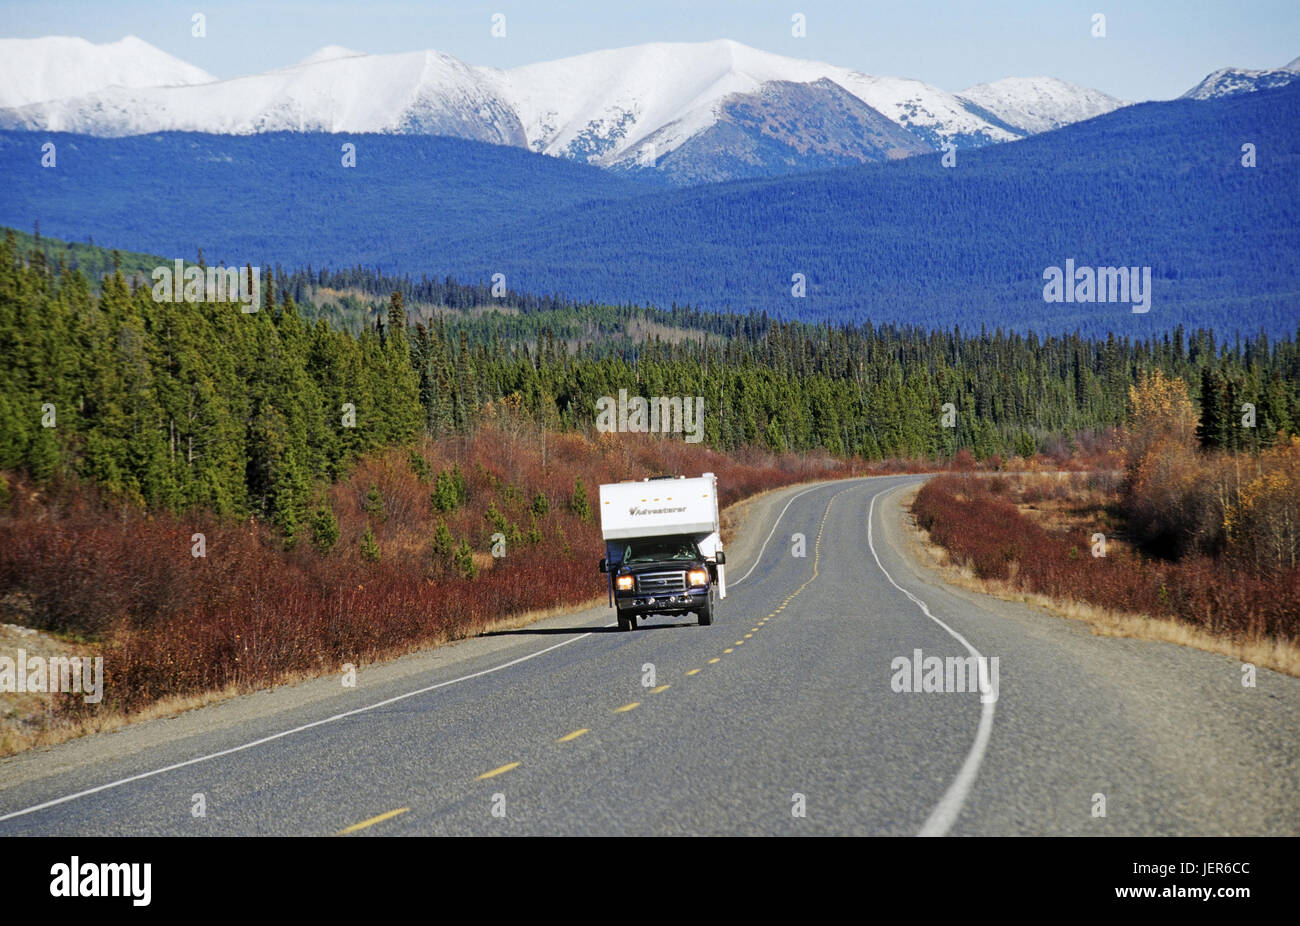 On the way on Alaska highway, Yukon Territories, Canada, Unterwegs auf dem Alaska Highway - Yukon Territories, Kanada Stock Photo